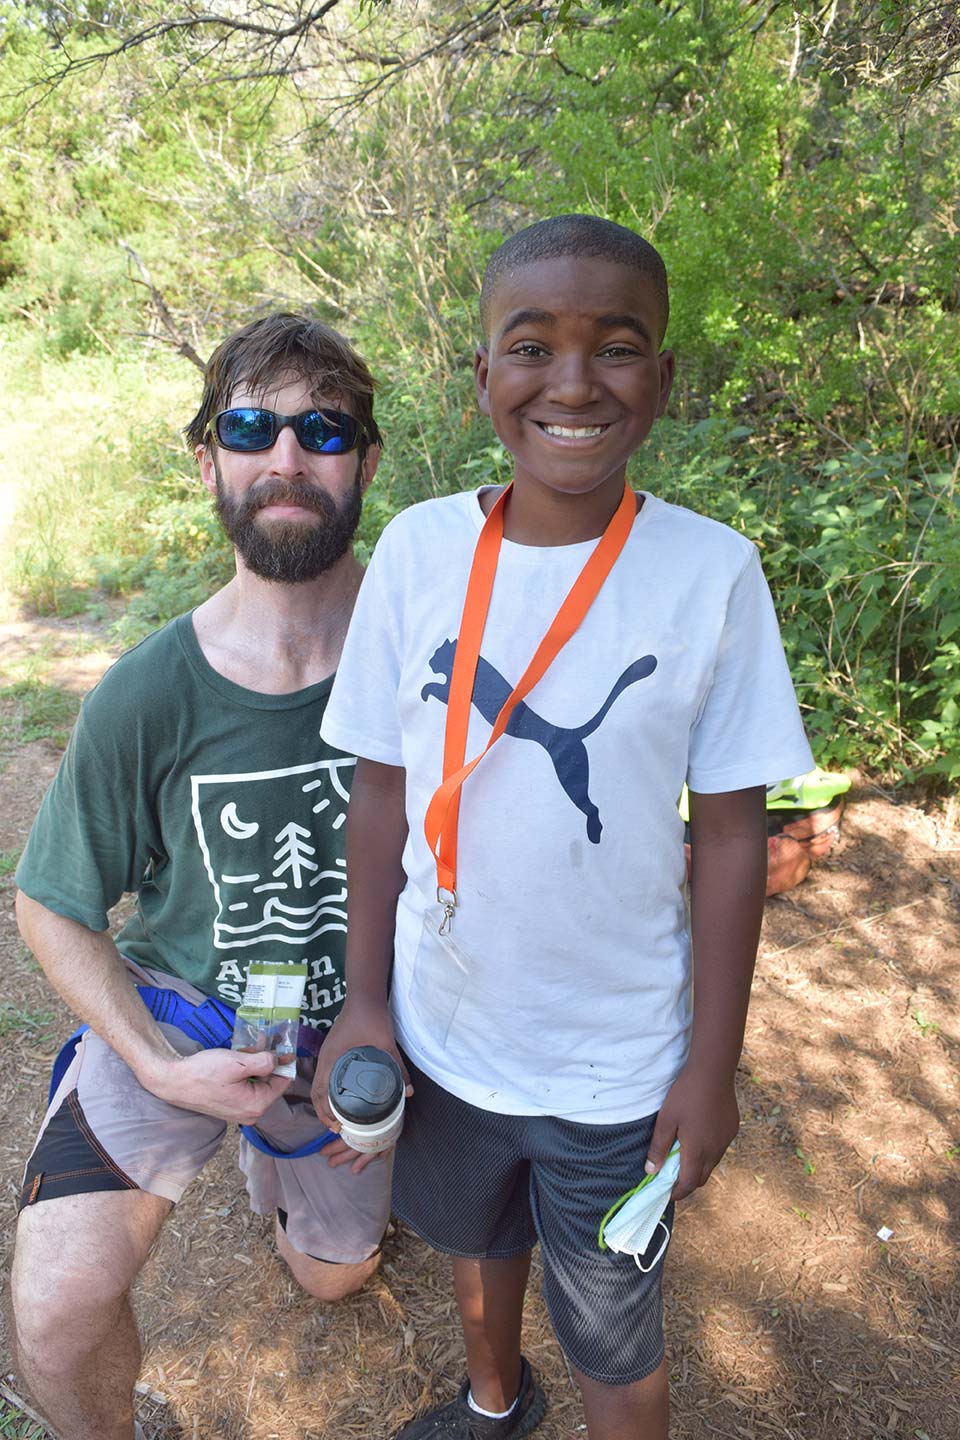 El consejero del campamento de verano de Austin Sunshine Camps se toma una foto con un campista